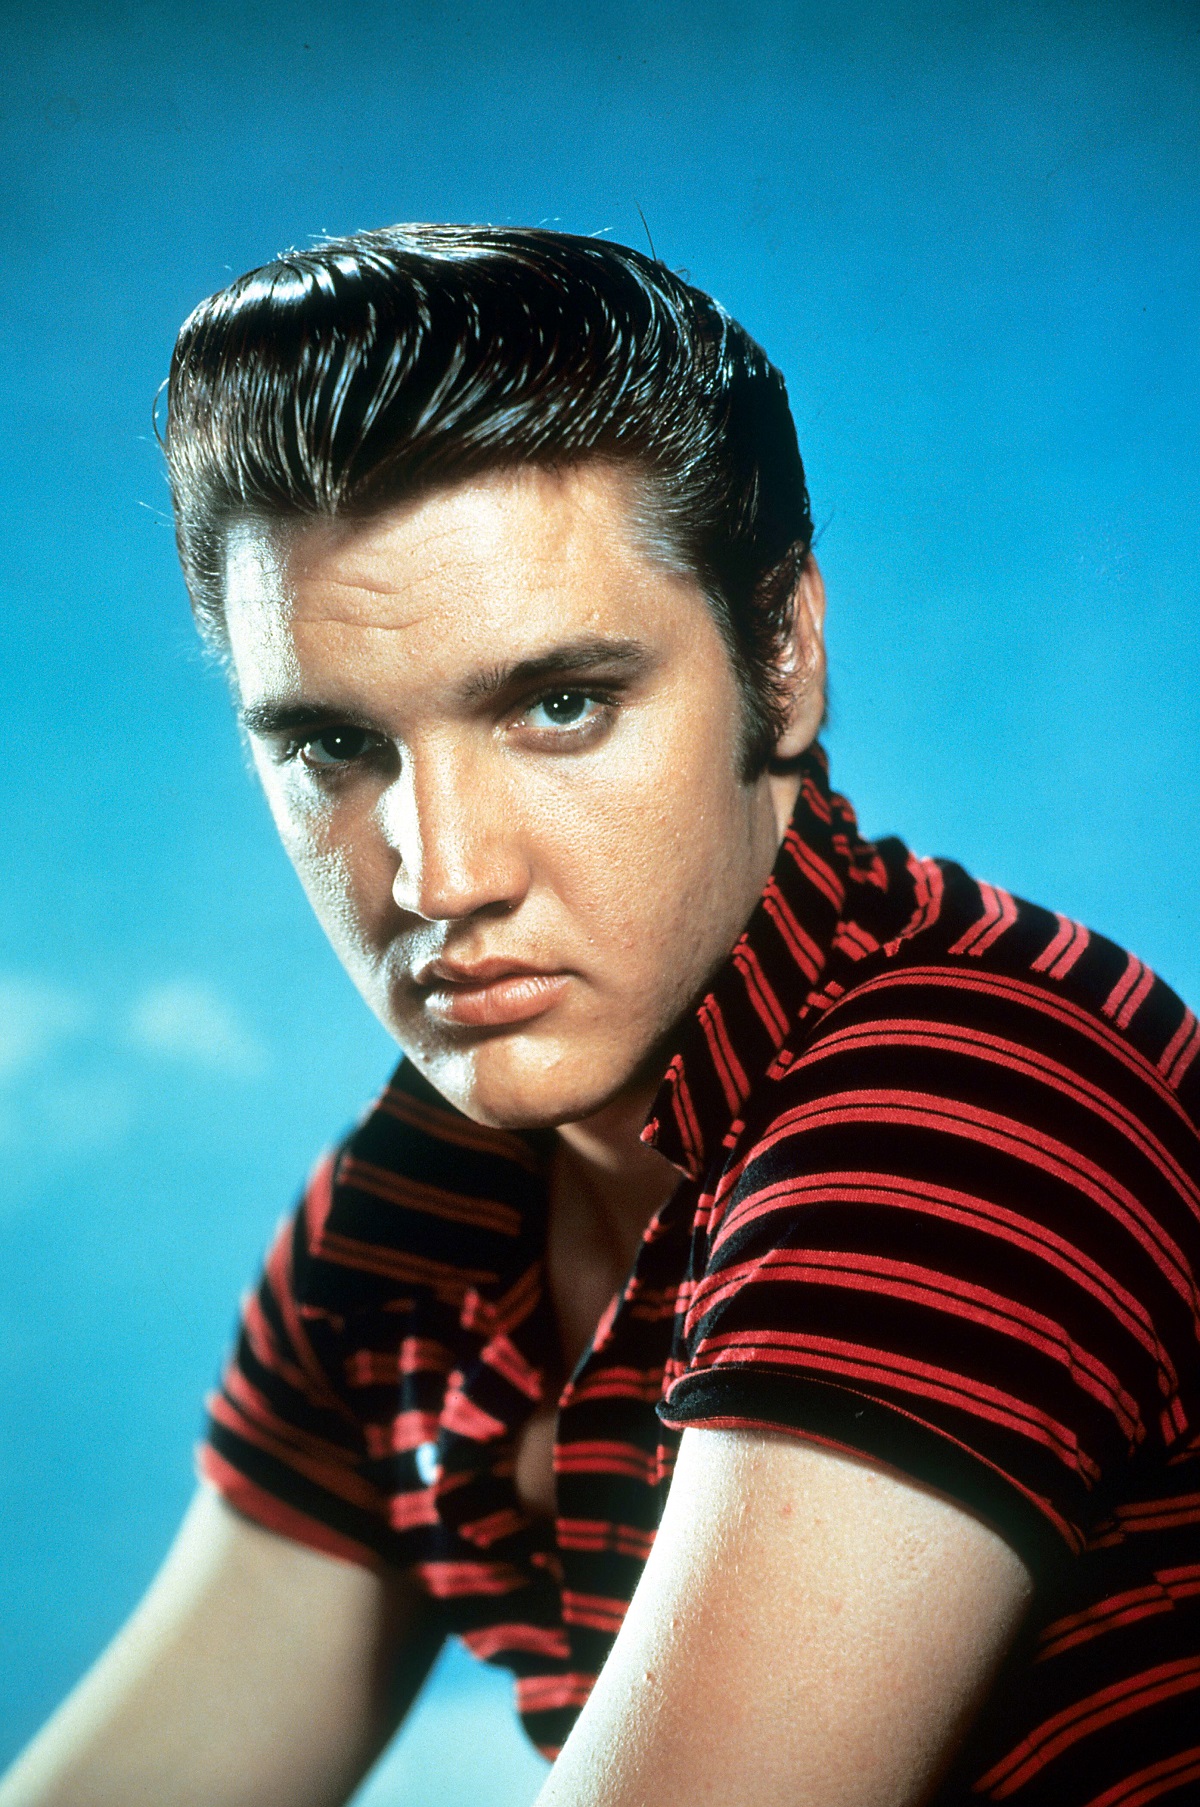 Elvis Presley in 1955 